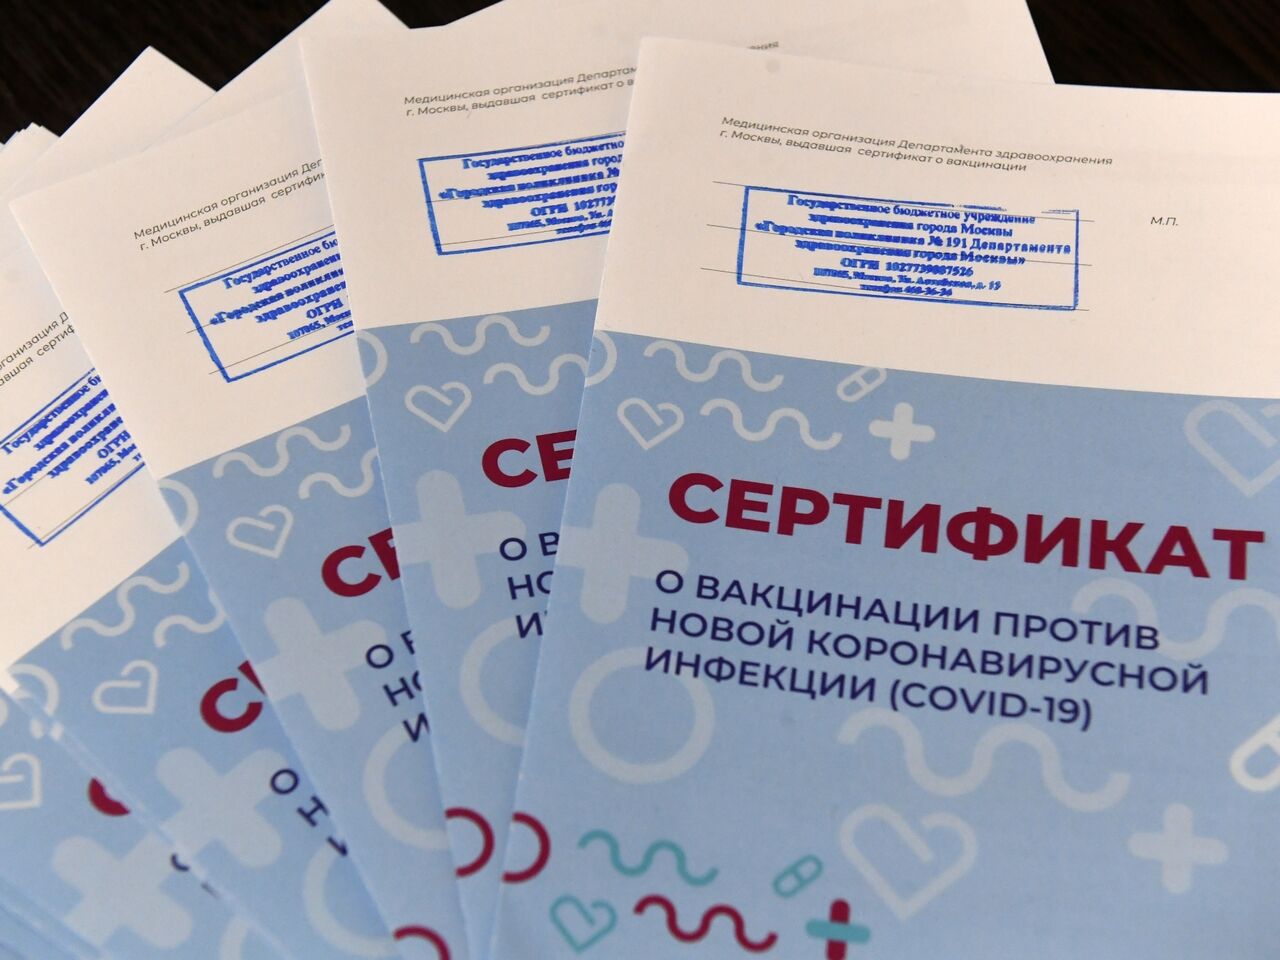 Сертификат о вакцинации против коронавирусной инфекции